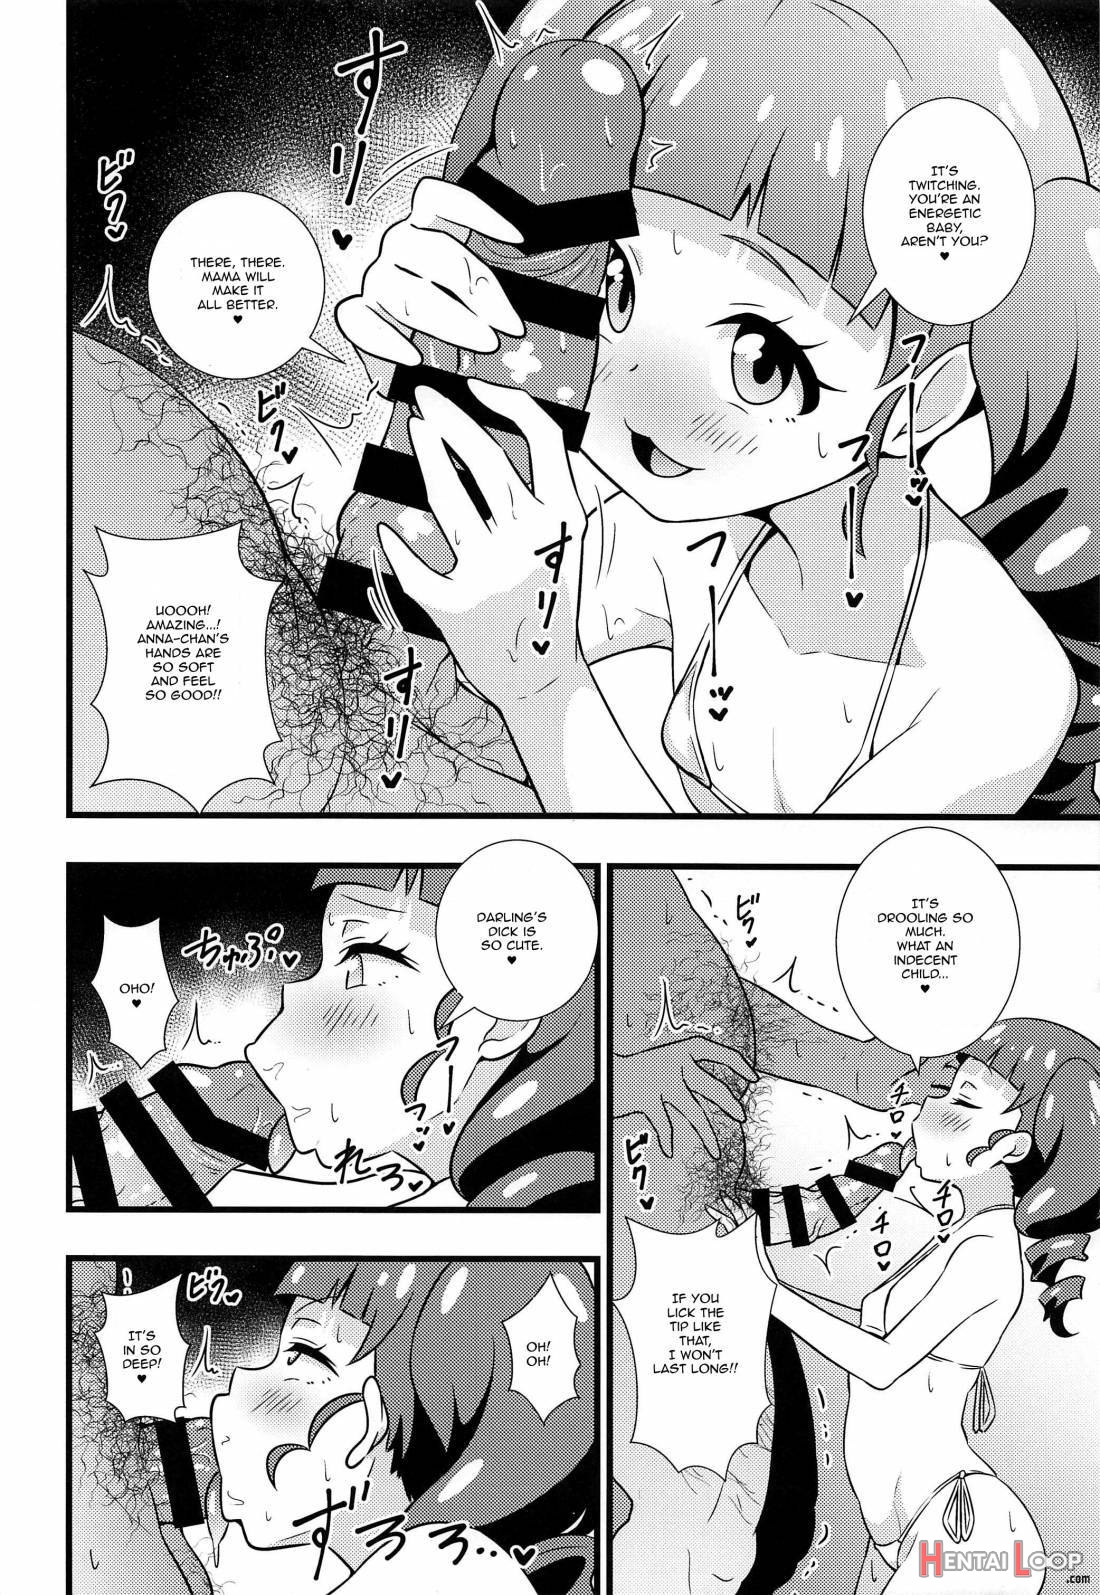 Anna-chan No Hanayome Shugyou page 5